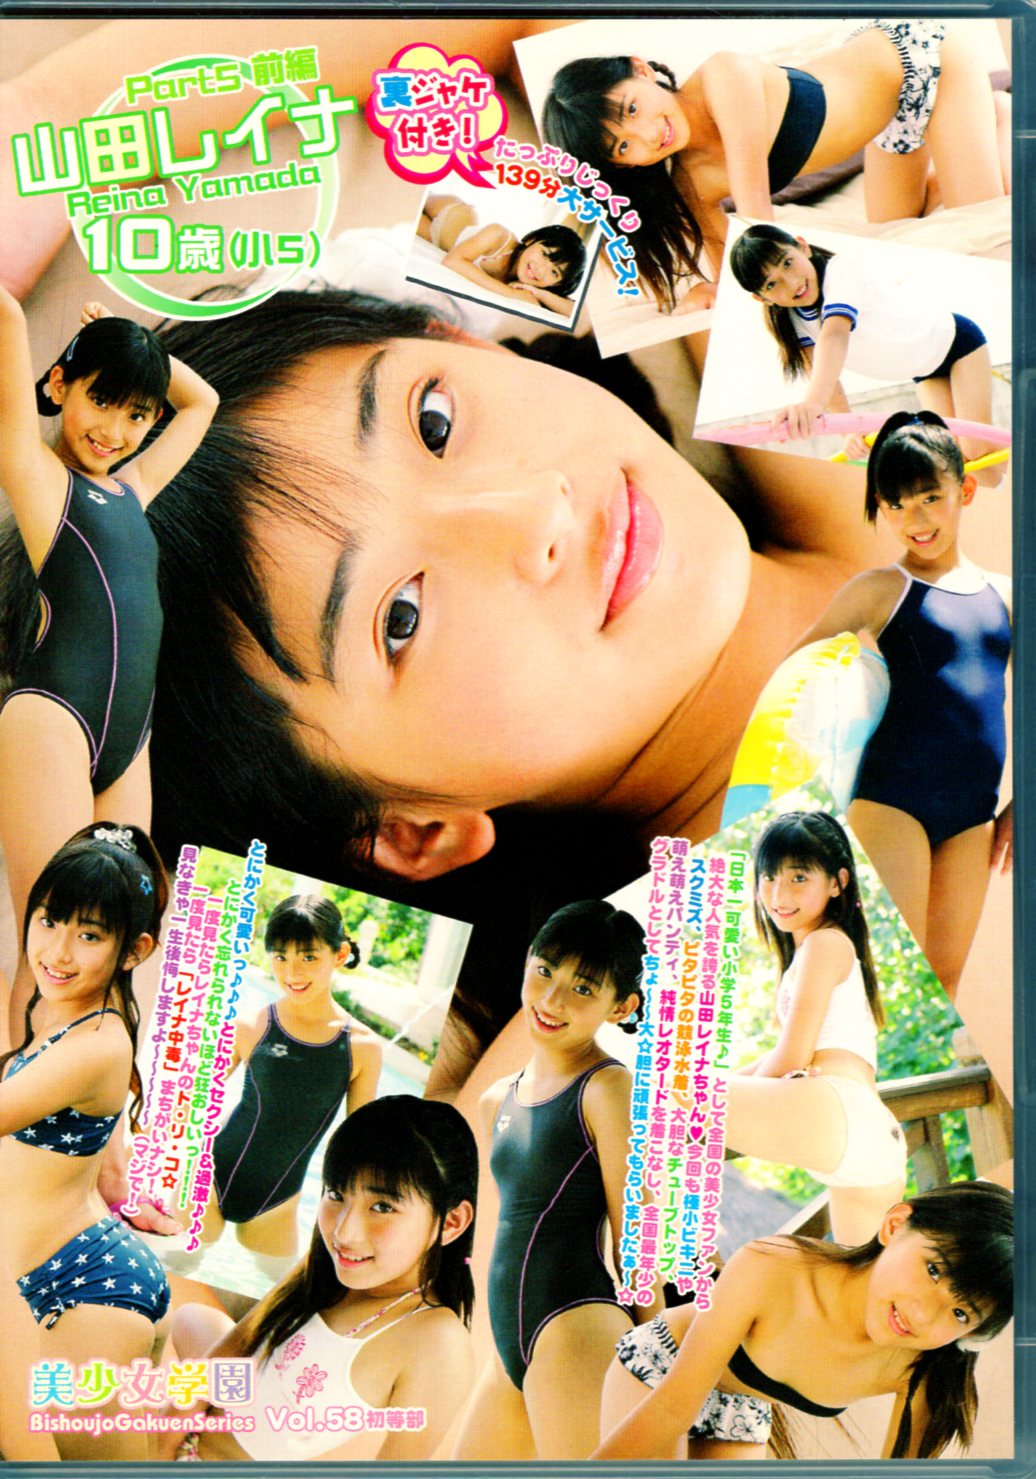 アイファクトリー DVD 山田レイナ 美少女学園Vol.58山田レイナPart5